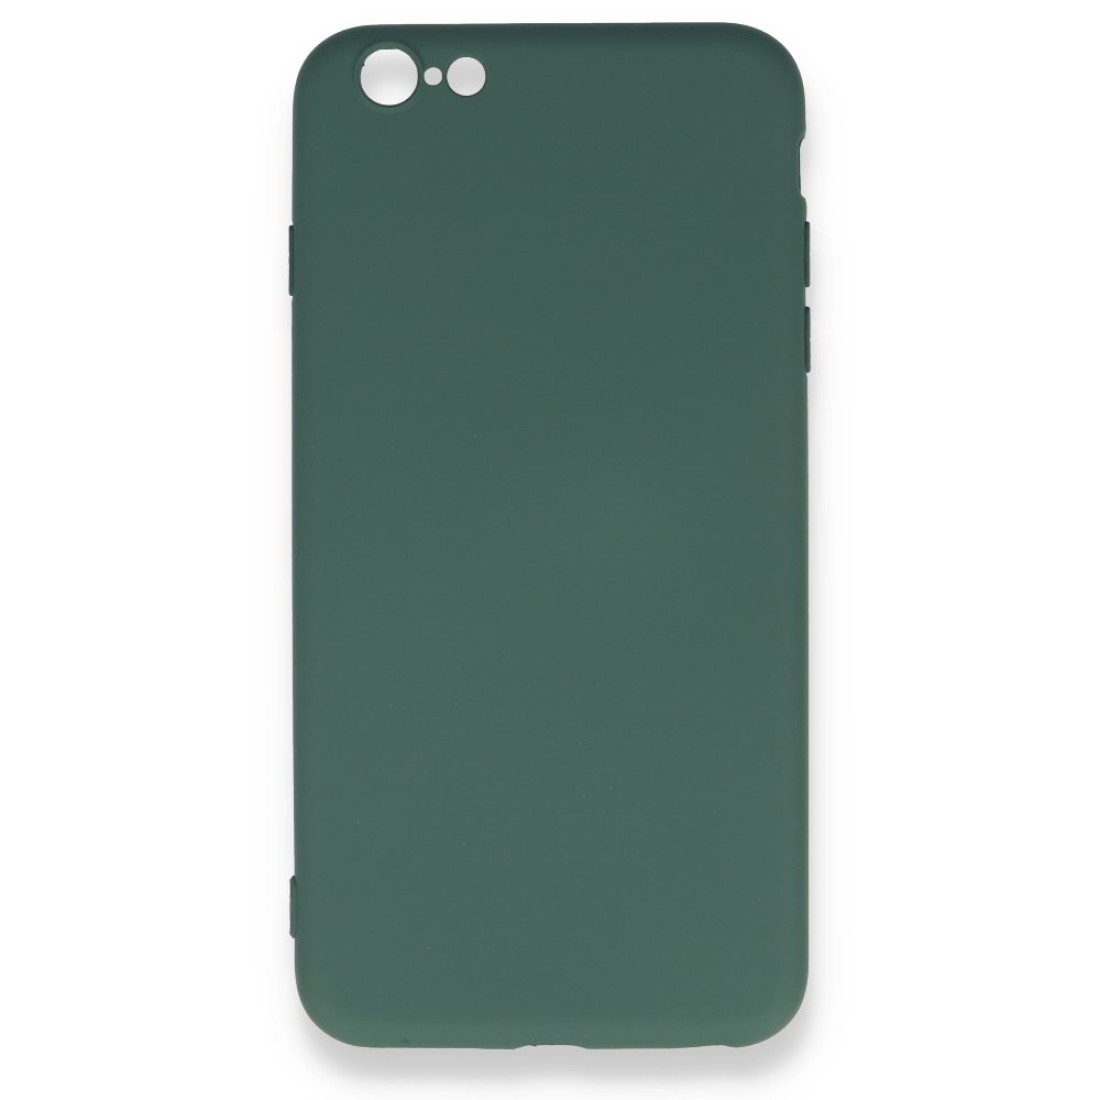 Apple iPhone 6 Plus Kılıf Nano içi Kadife  Silikon - Koyu Yeşil